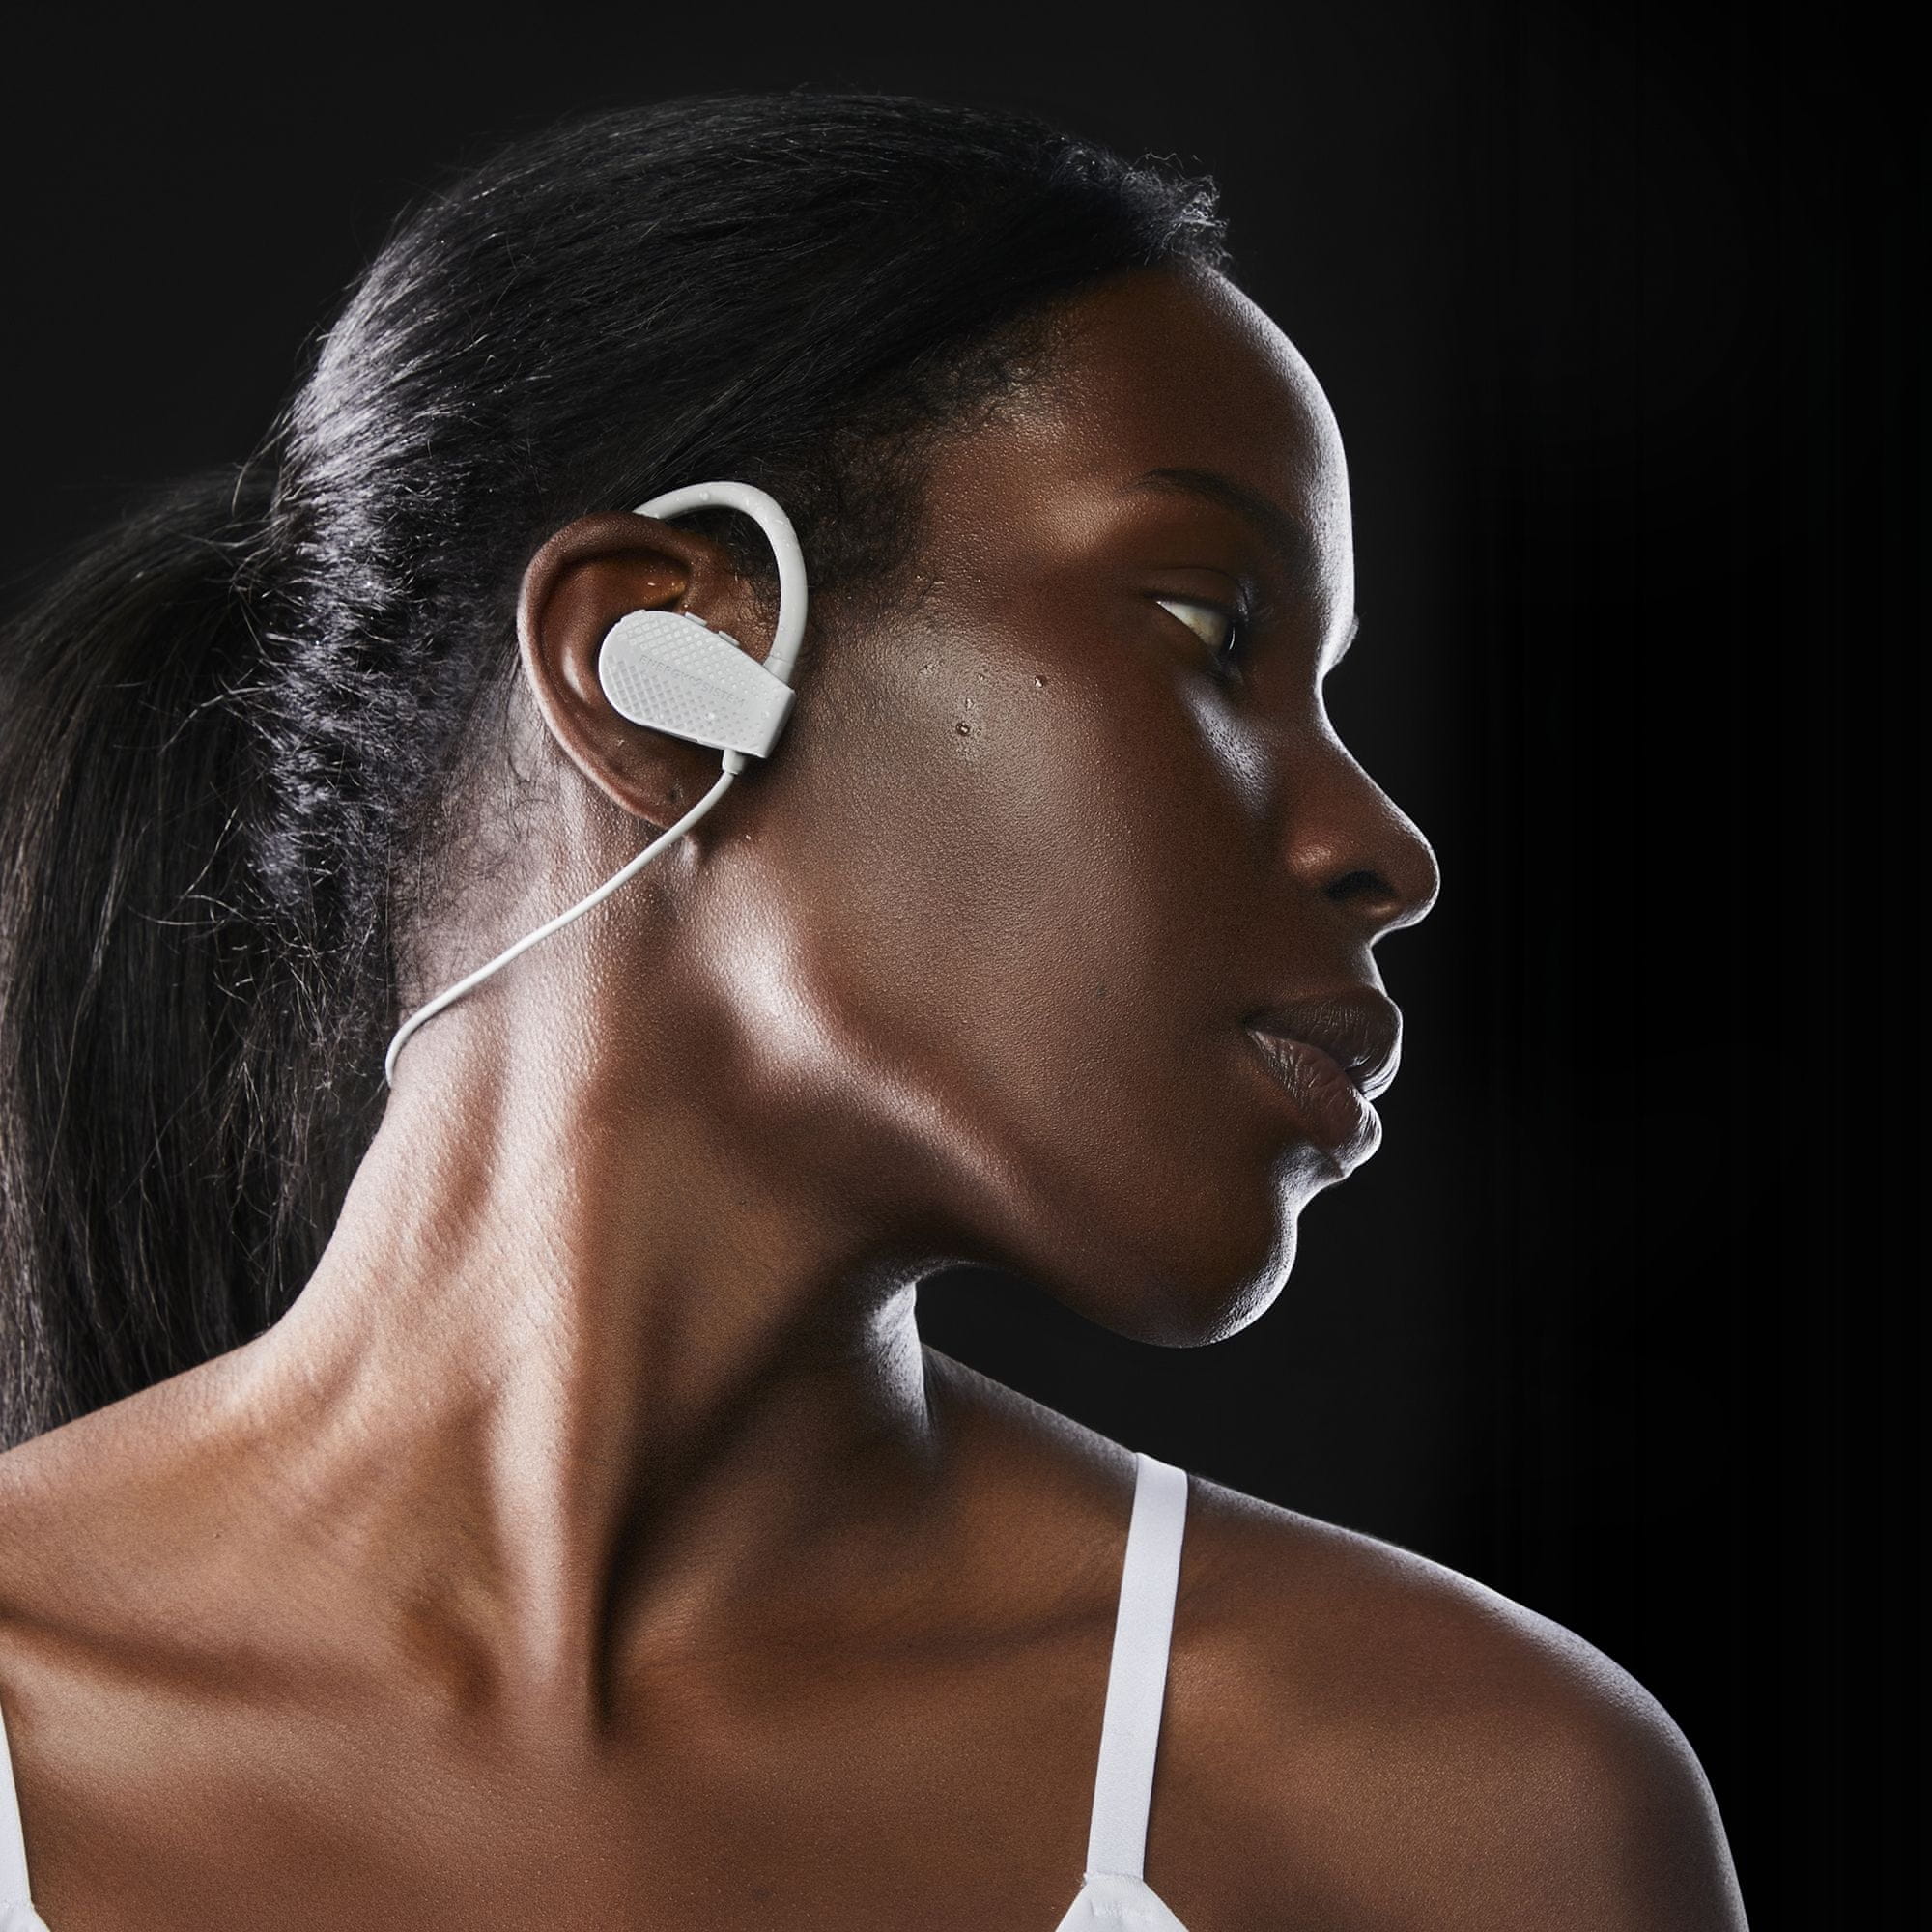  štýlové Bluetooth slúchadlá do uší energy sistem earphones Bluetooth šport 1 usb-c nabíjanie kábel za krkom špunty do uší tlačidla pre ovládanie odolná vode výkonné meniče secure fit upevnenie v ušiach 